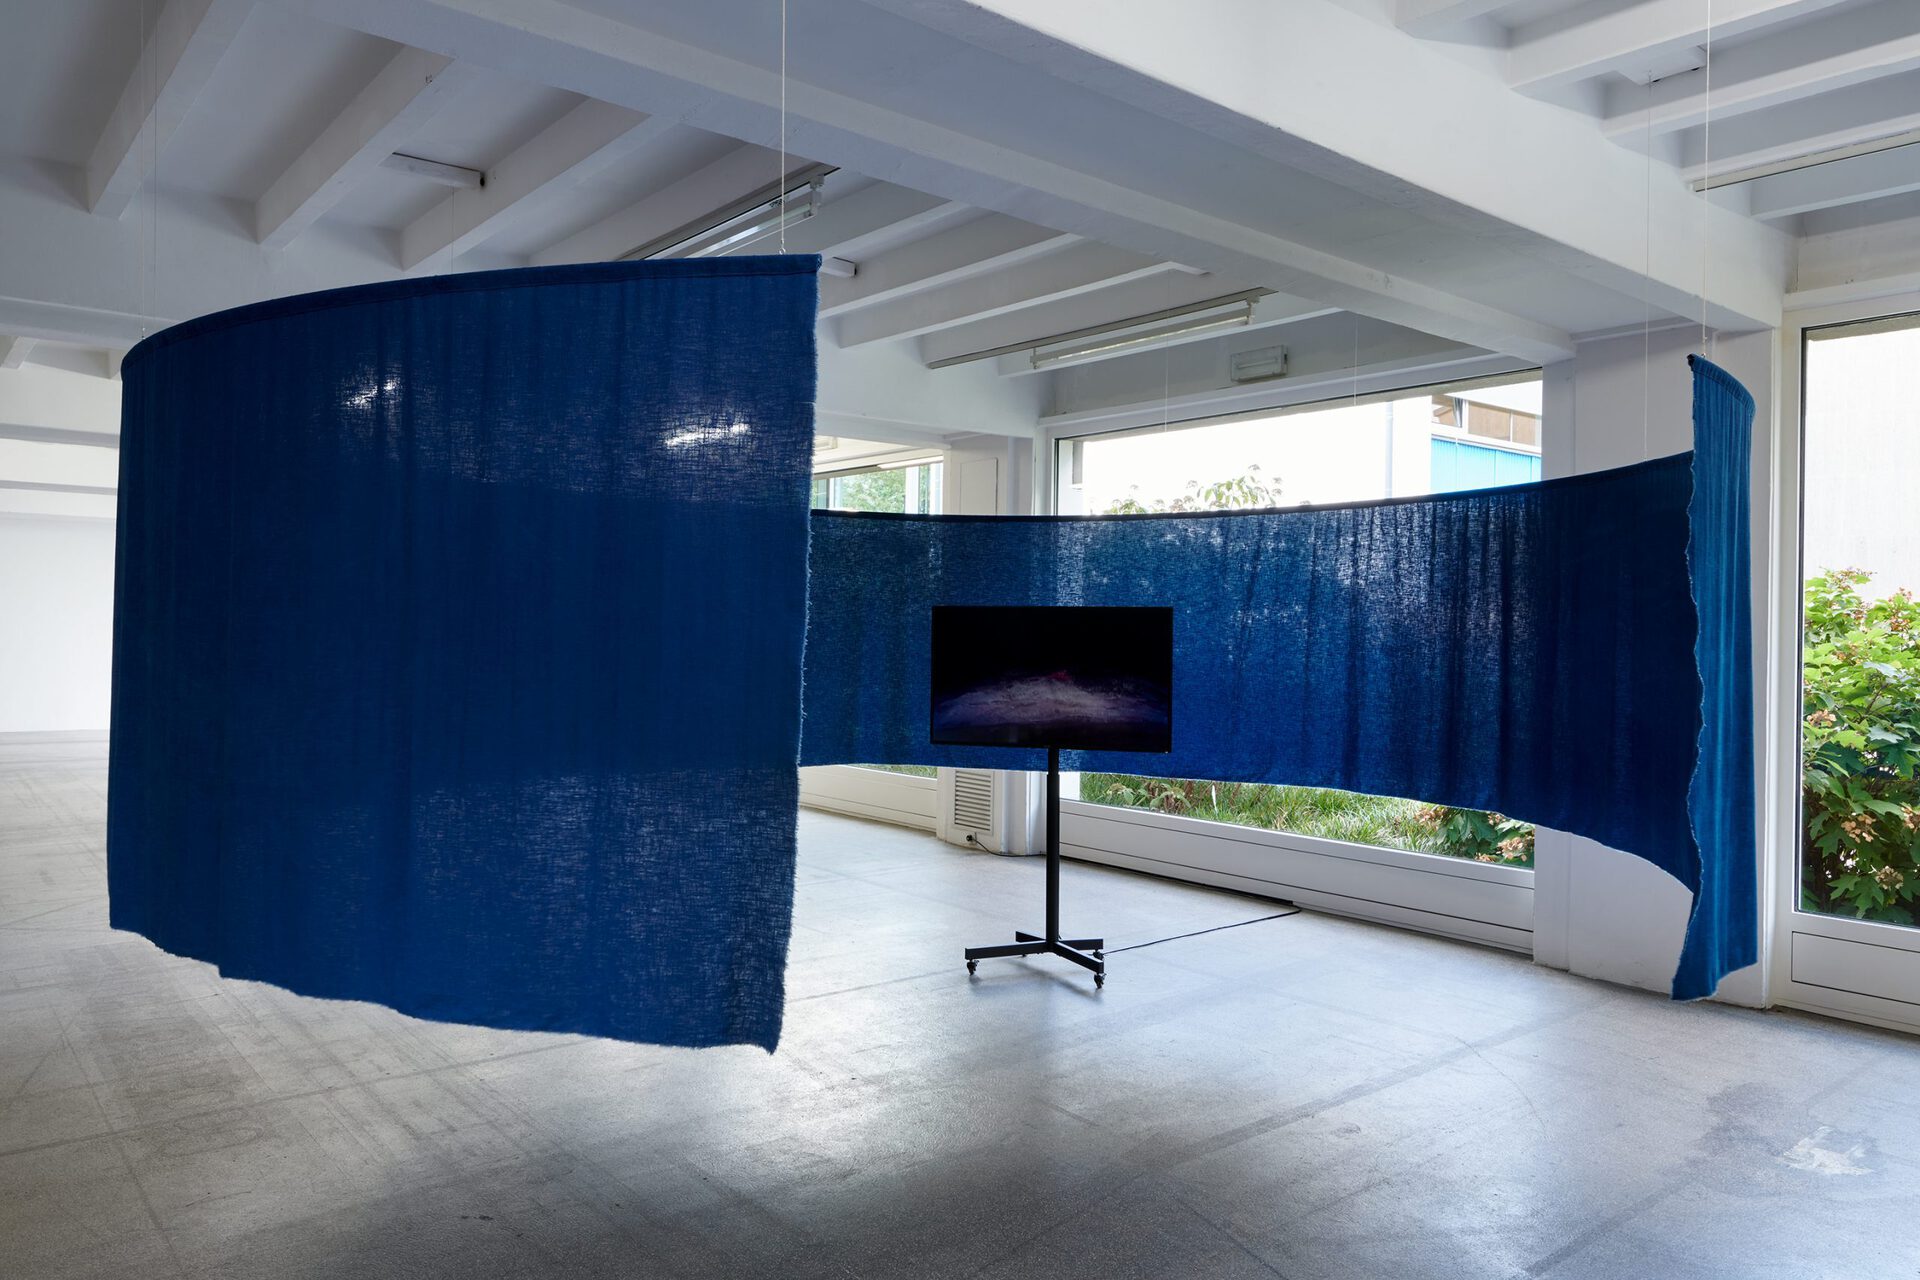 Dunja Herzog, Blue Gold – Soft Spheres, 2020, and Unter Tage, 2020, Installation view, Kölnischer Kunstverein, 2020, Photo: Mareike Tocha, Courtesy: the artist